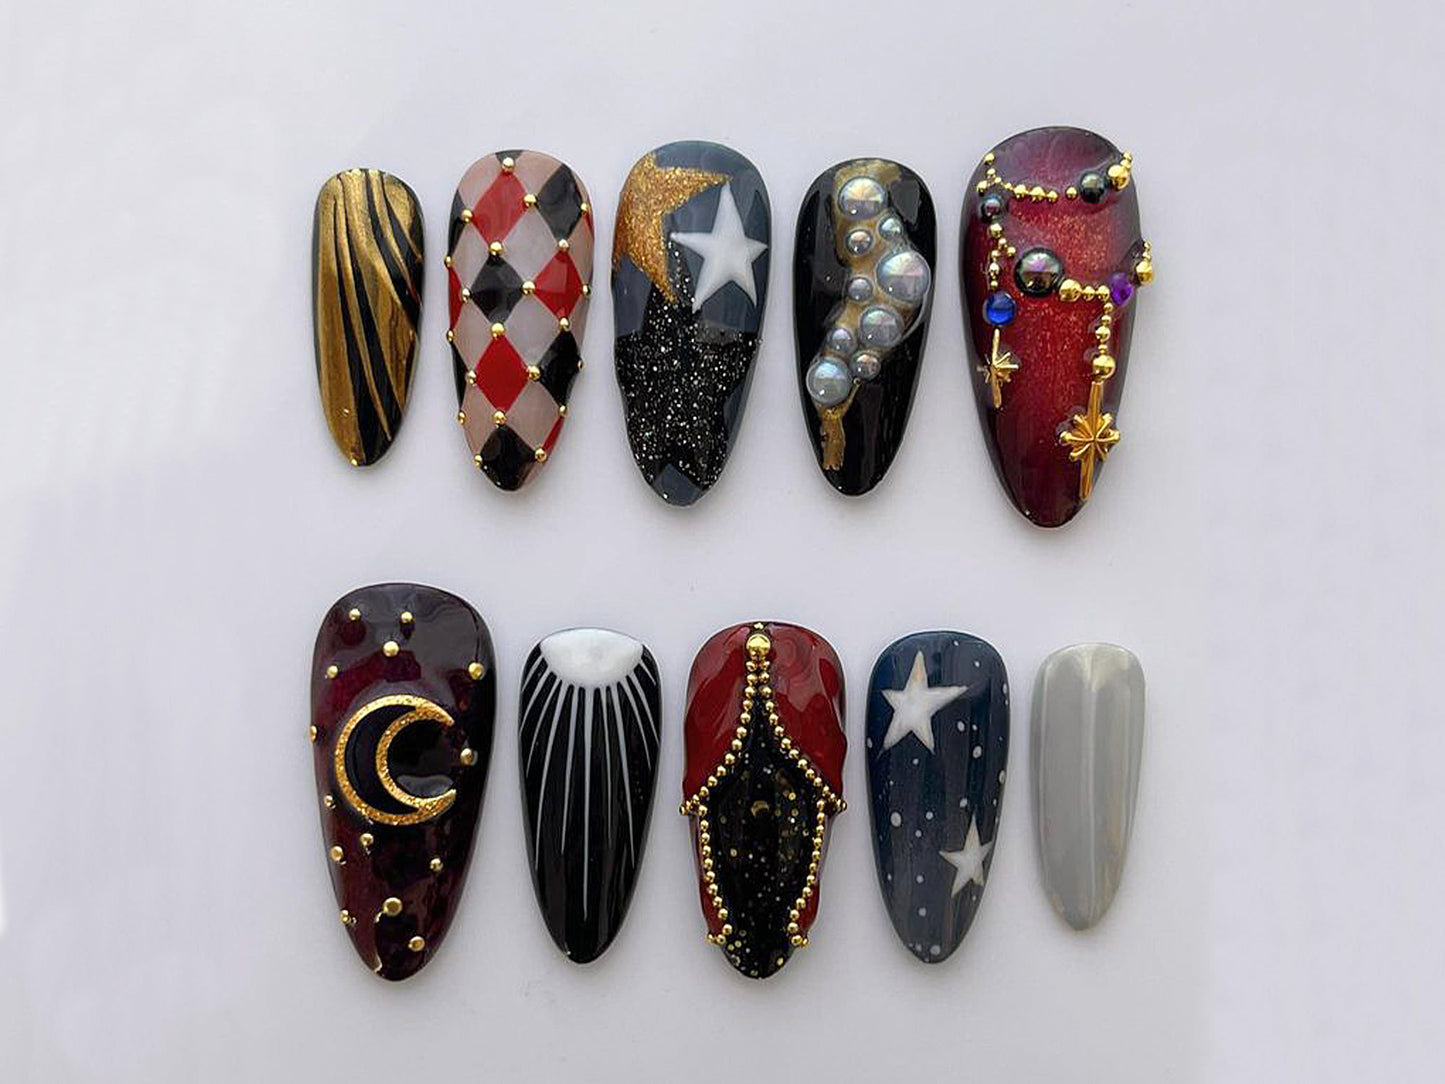 Circus Fair Night Press On Nails | Arabian Inspired Nail Set | Whimsical Circus Carnival Nail Art | Fake Nails | Holiday, Party Nails | J114